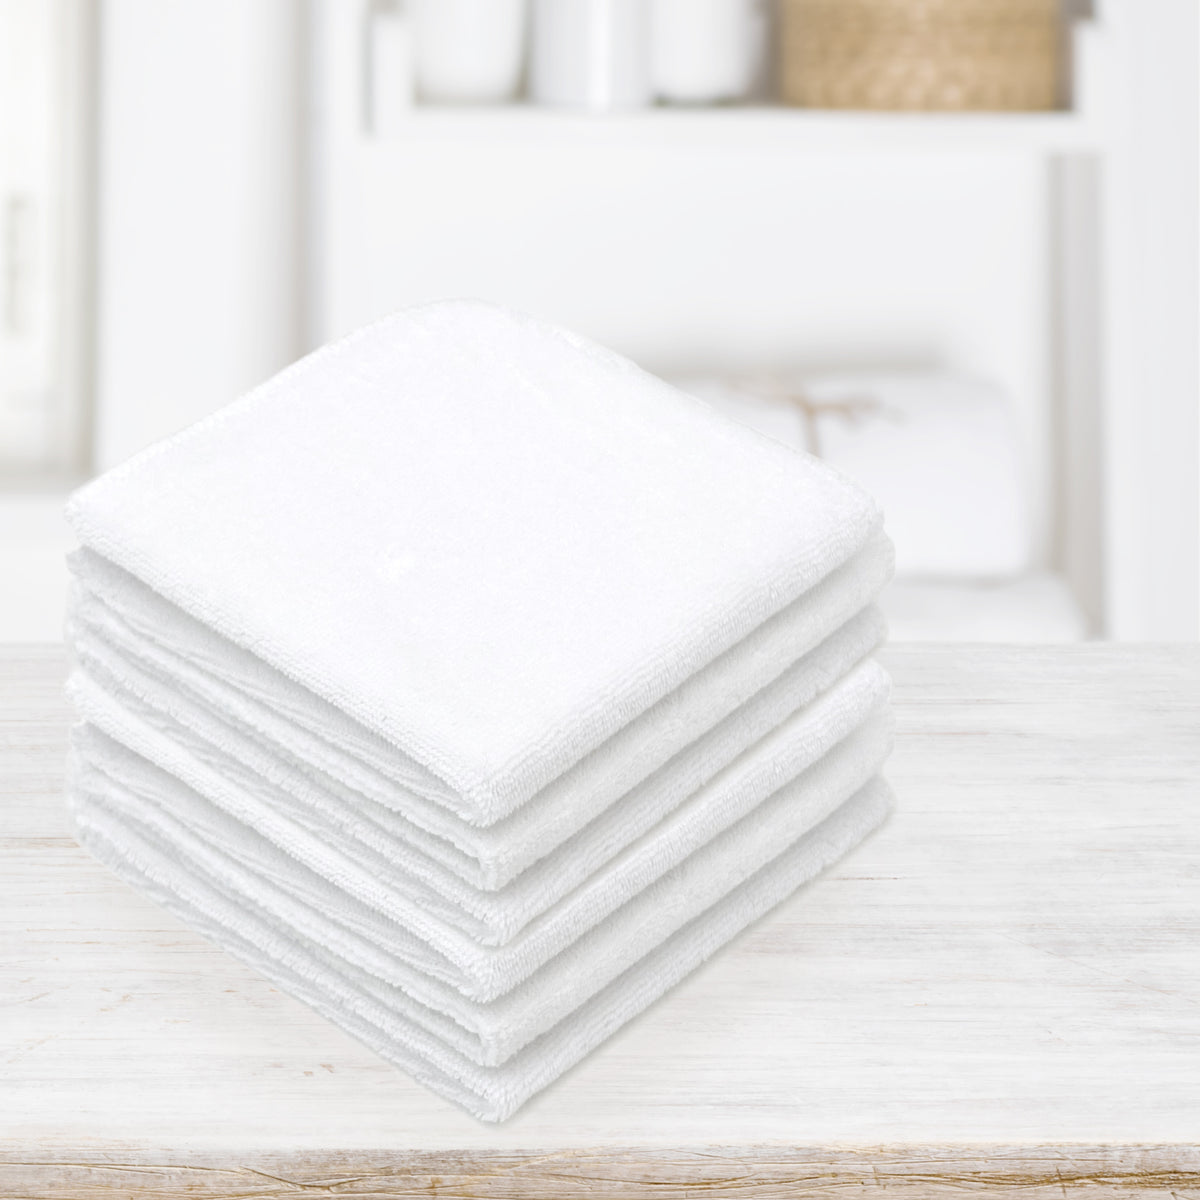 Kushies Washcloths 6-Pack  White - Kushies Baby USA Inc